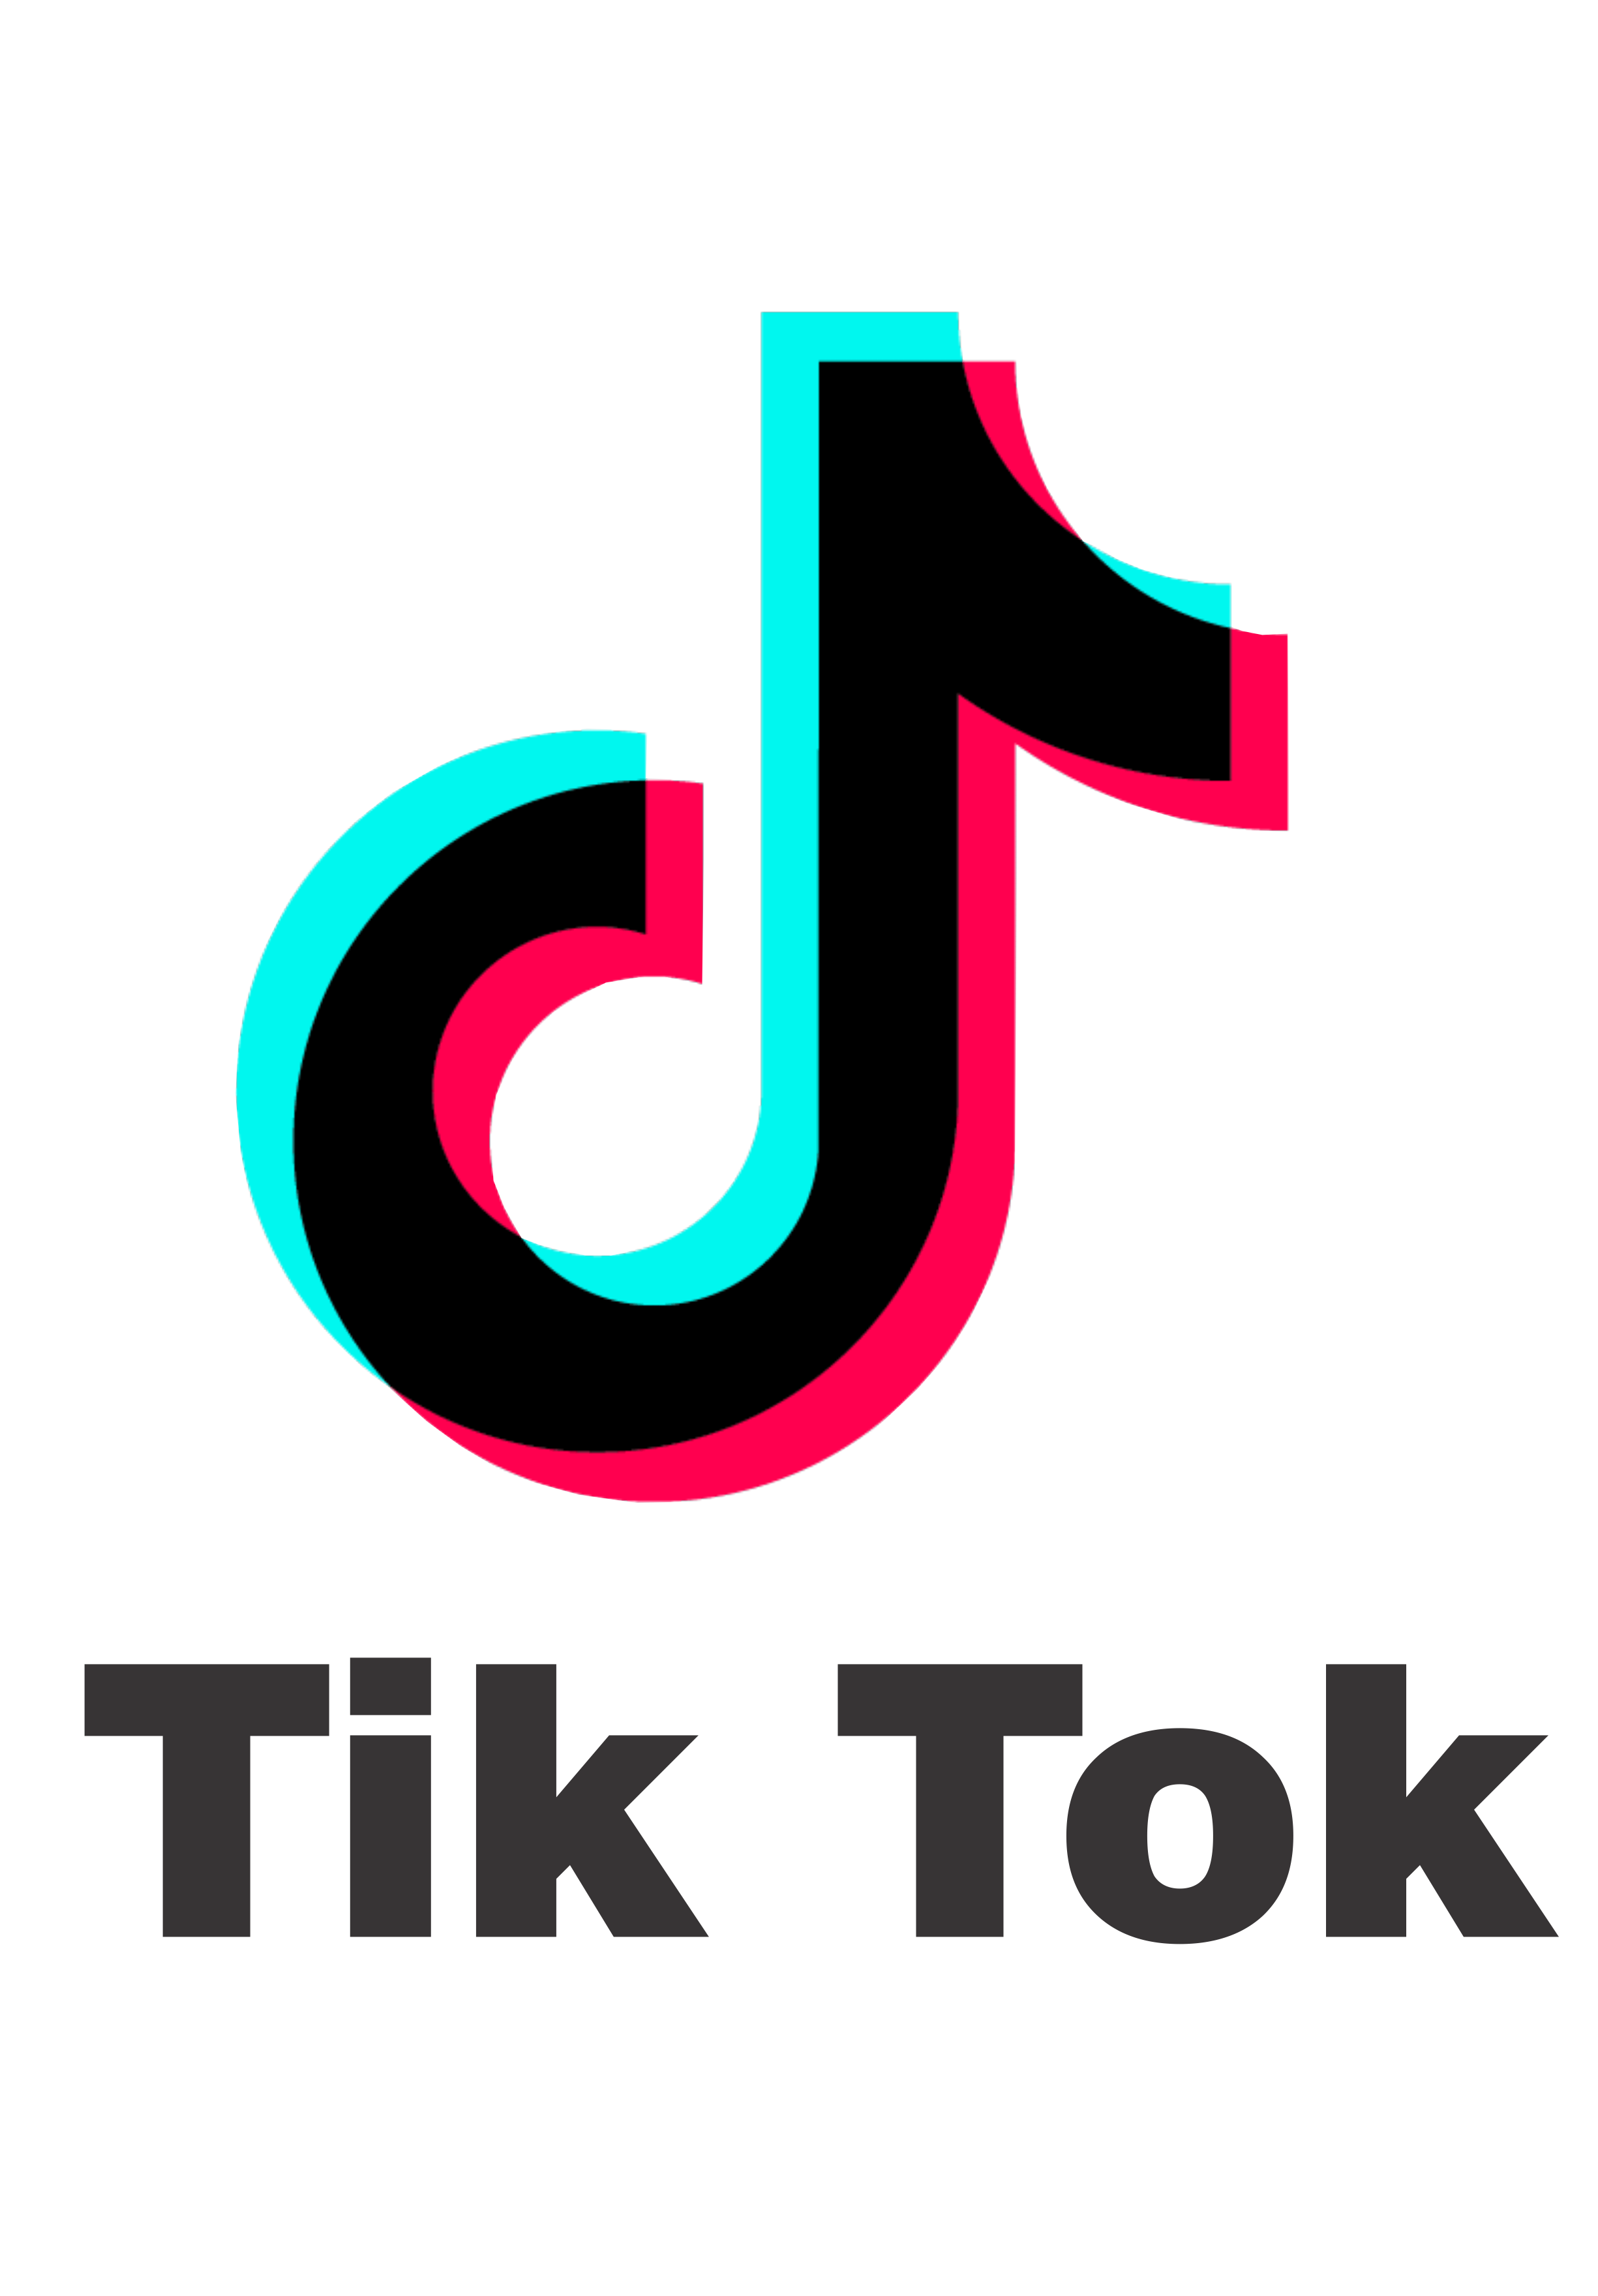 Key Tik Tok Key Tik Tok Logo Descubra E Partilhe S My Xxx Hot Girl